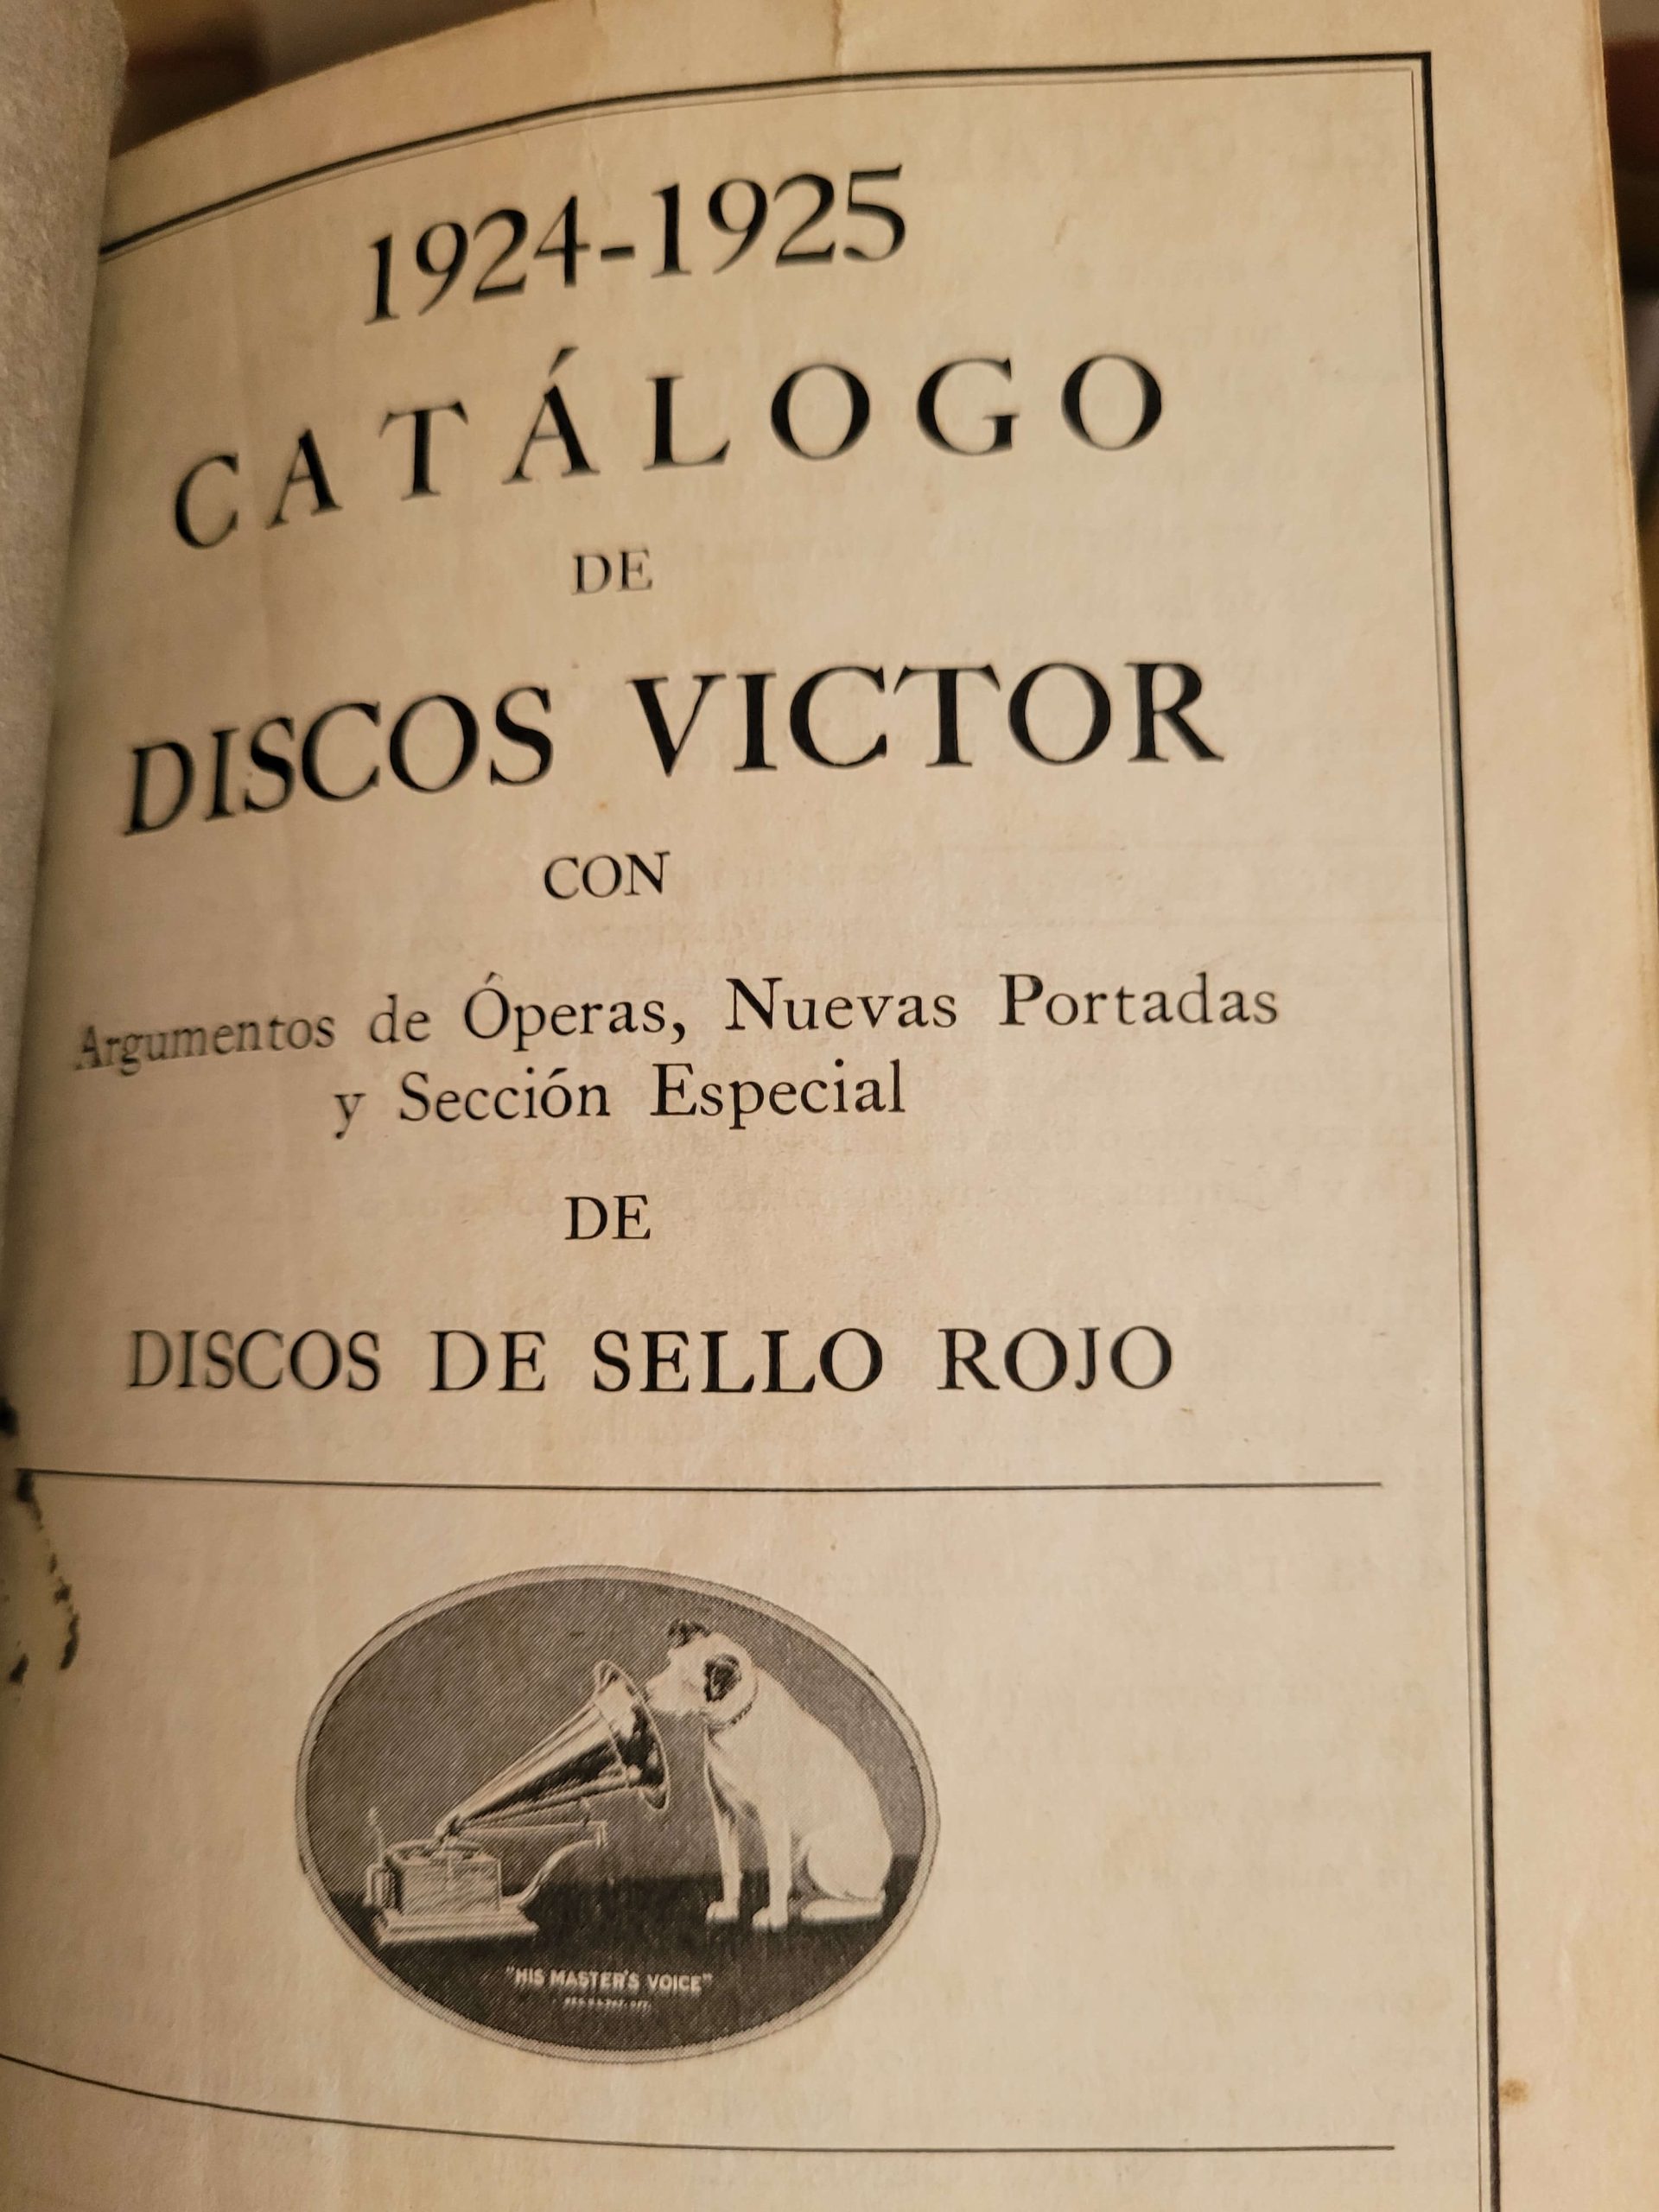 (1925) Catálogo 1924-1925 Discos Víctor